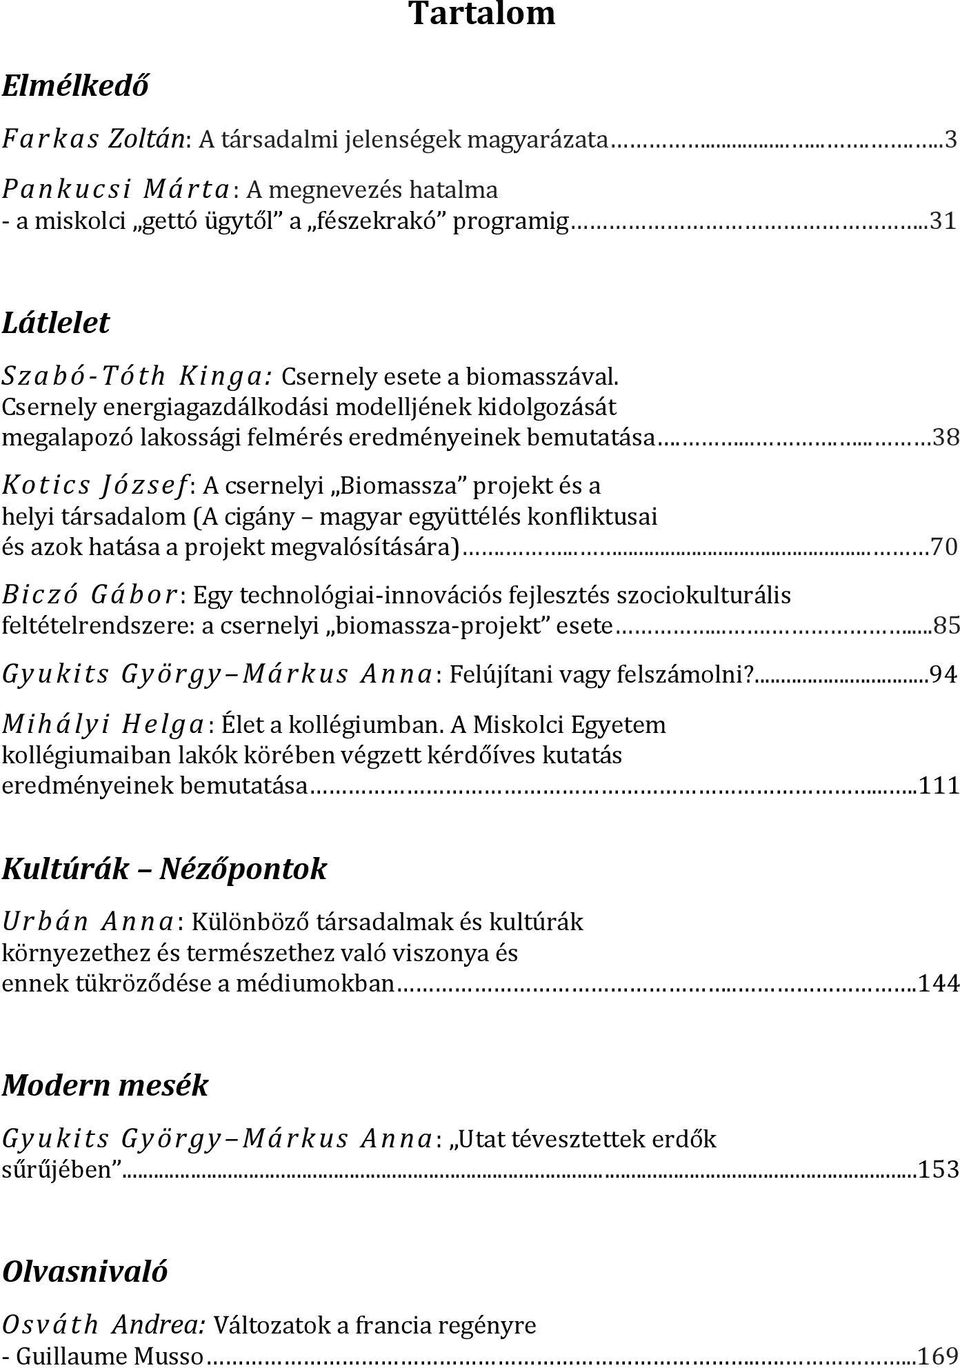 ....... 38 Kot ics J ózs ef : A csernelyi Biomassza projekt és a helyi társadalom (A cigány magyar együttélés konfliktusai és azok hatása a projekt megvalósítására).